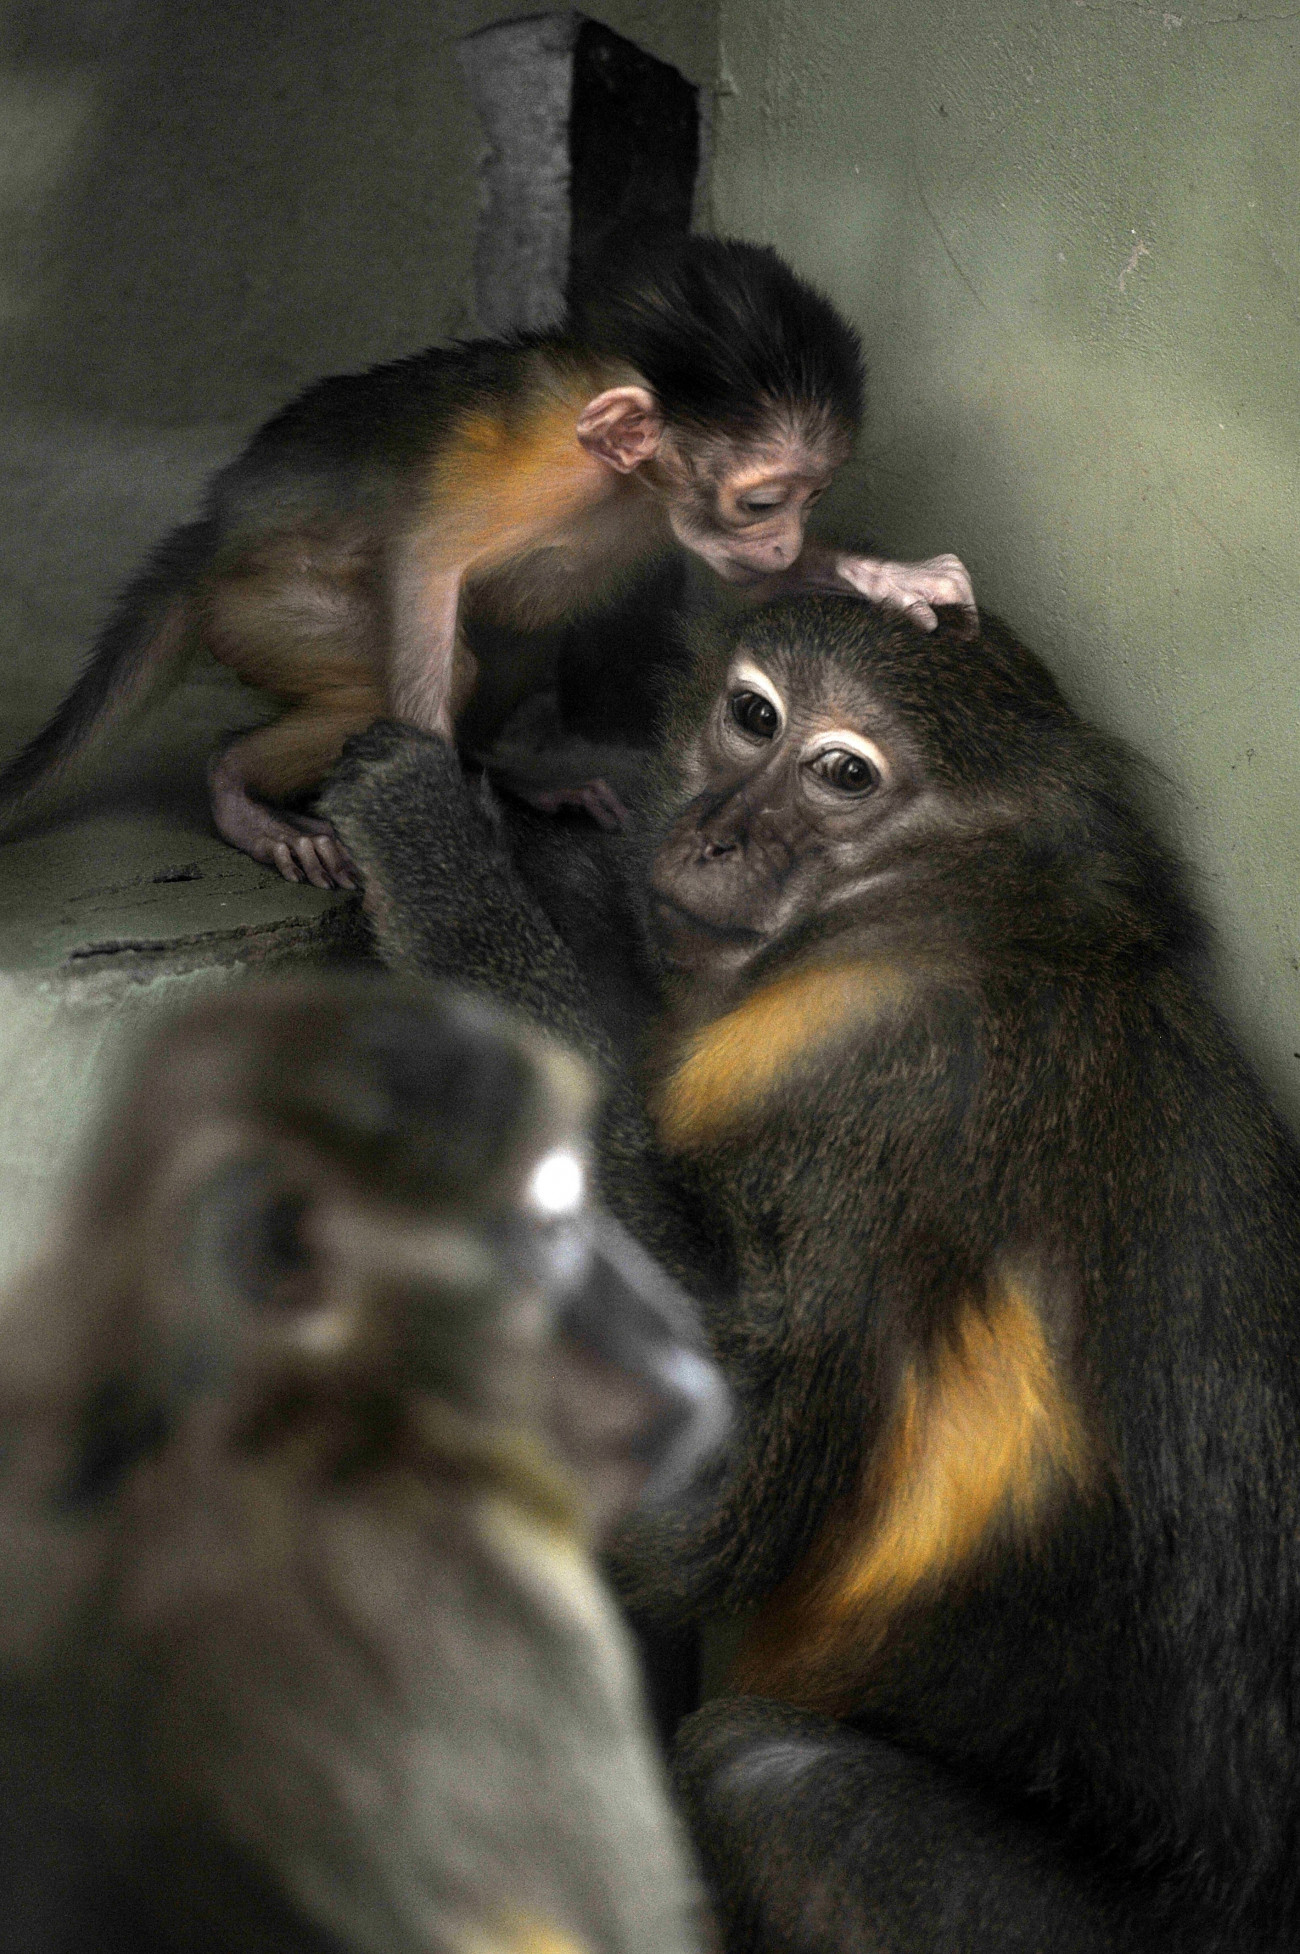 Budapest, 2018. november 9.
Aranyhasú mangábé (Cercocebus chrysogaster) 2018. október 22-én született kölykével a Fővárosi Állat- és Növénykertben november 9-én. A majomfaj rendkívüli ritkaságnak számít, a világ több ezer állatkertje közül mindössze tizenkettőben láthatók.
MTI/Kovács Attila